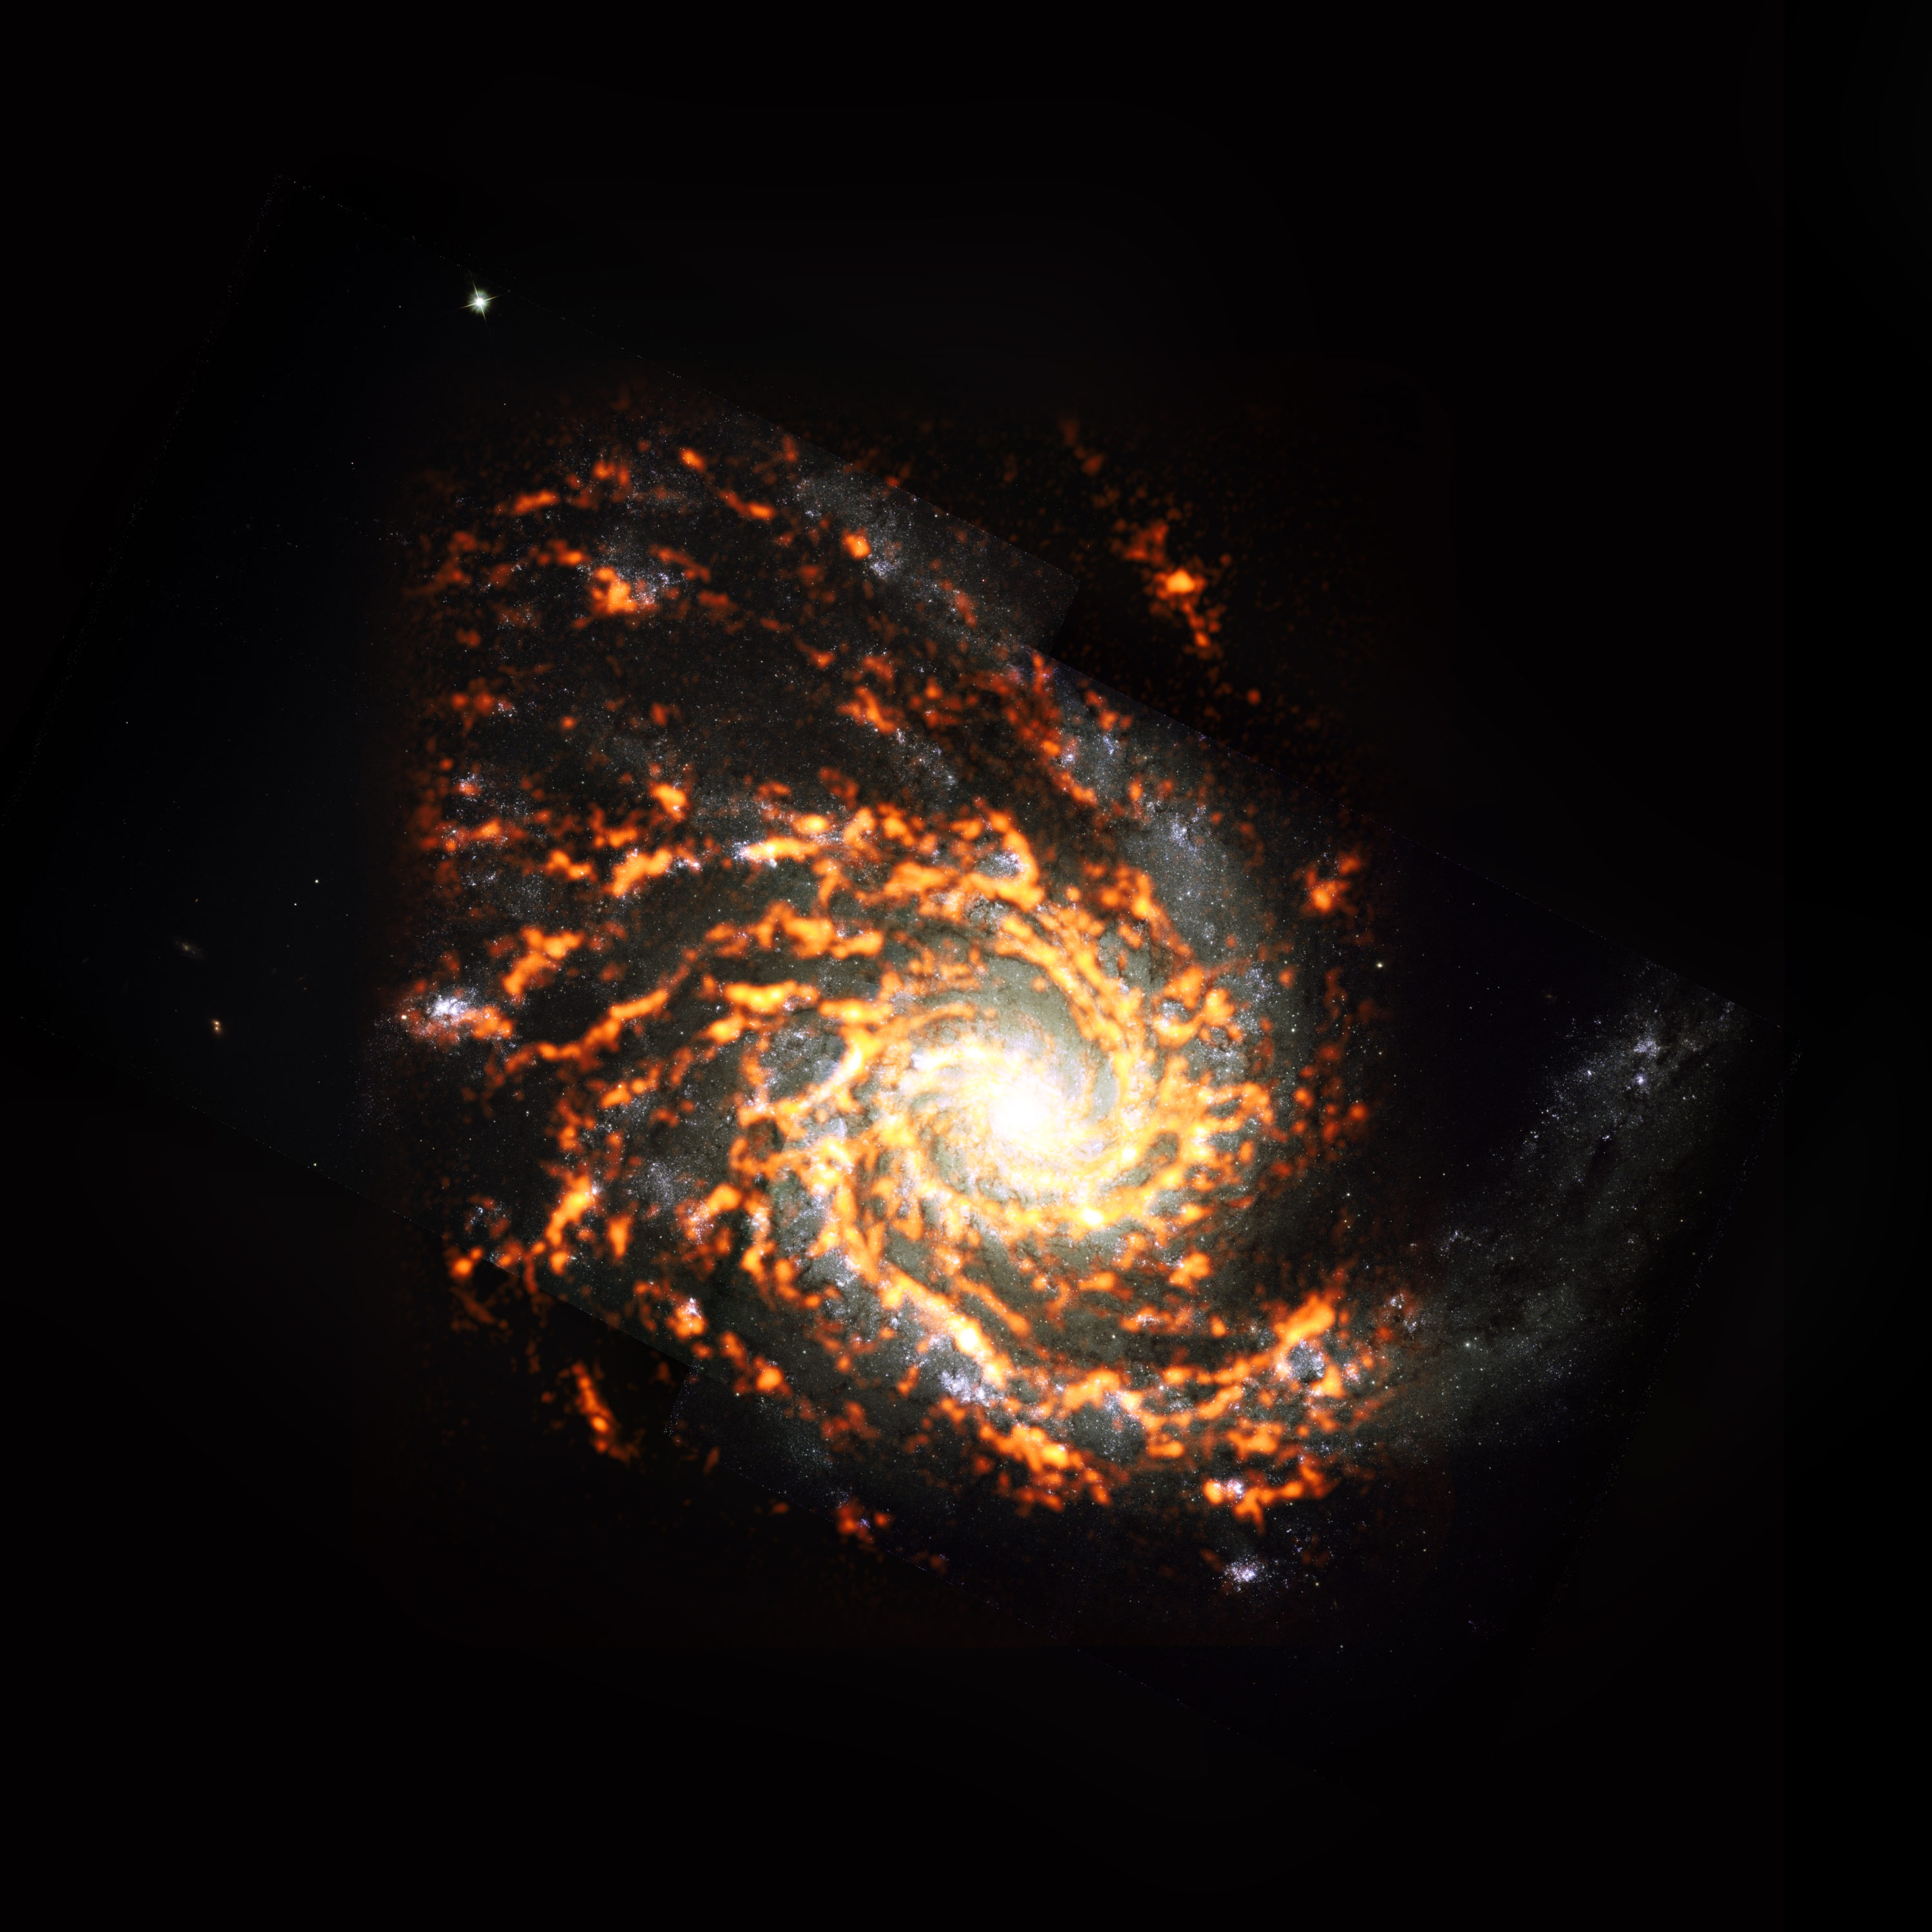 Mostrada aquí como un compuesto ALMA (naranja / rojo) con datos del Telescopio Espacial Hubble (HST), NGC4254 estaba entre las casi 100 galaxias incluidas en el reciente censo del proyecto PHANGS de galaxias en el Universo cercano. La encuesta encontró que los viveros estelares dentro de estas galaxias varían ampliamente en apariencia y comportamiento, y que estas características dependen en gran medida de dónde se encuentran los viveros estelares. NGC4254 es un ejemplo de una galaxia que presenta una morfología de tipo M. Crédito: ALMA (ESO/NAOJ/NRAO) / PHANGS, S. Dagnello (NRAO)